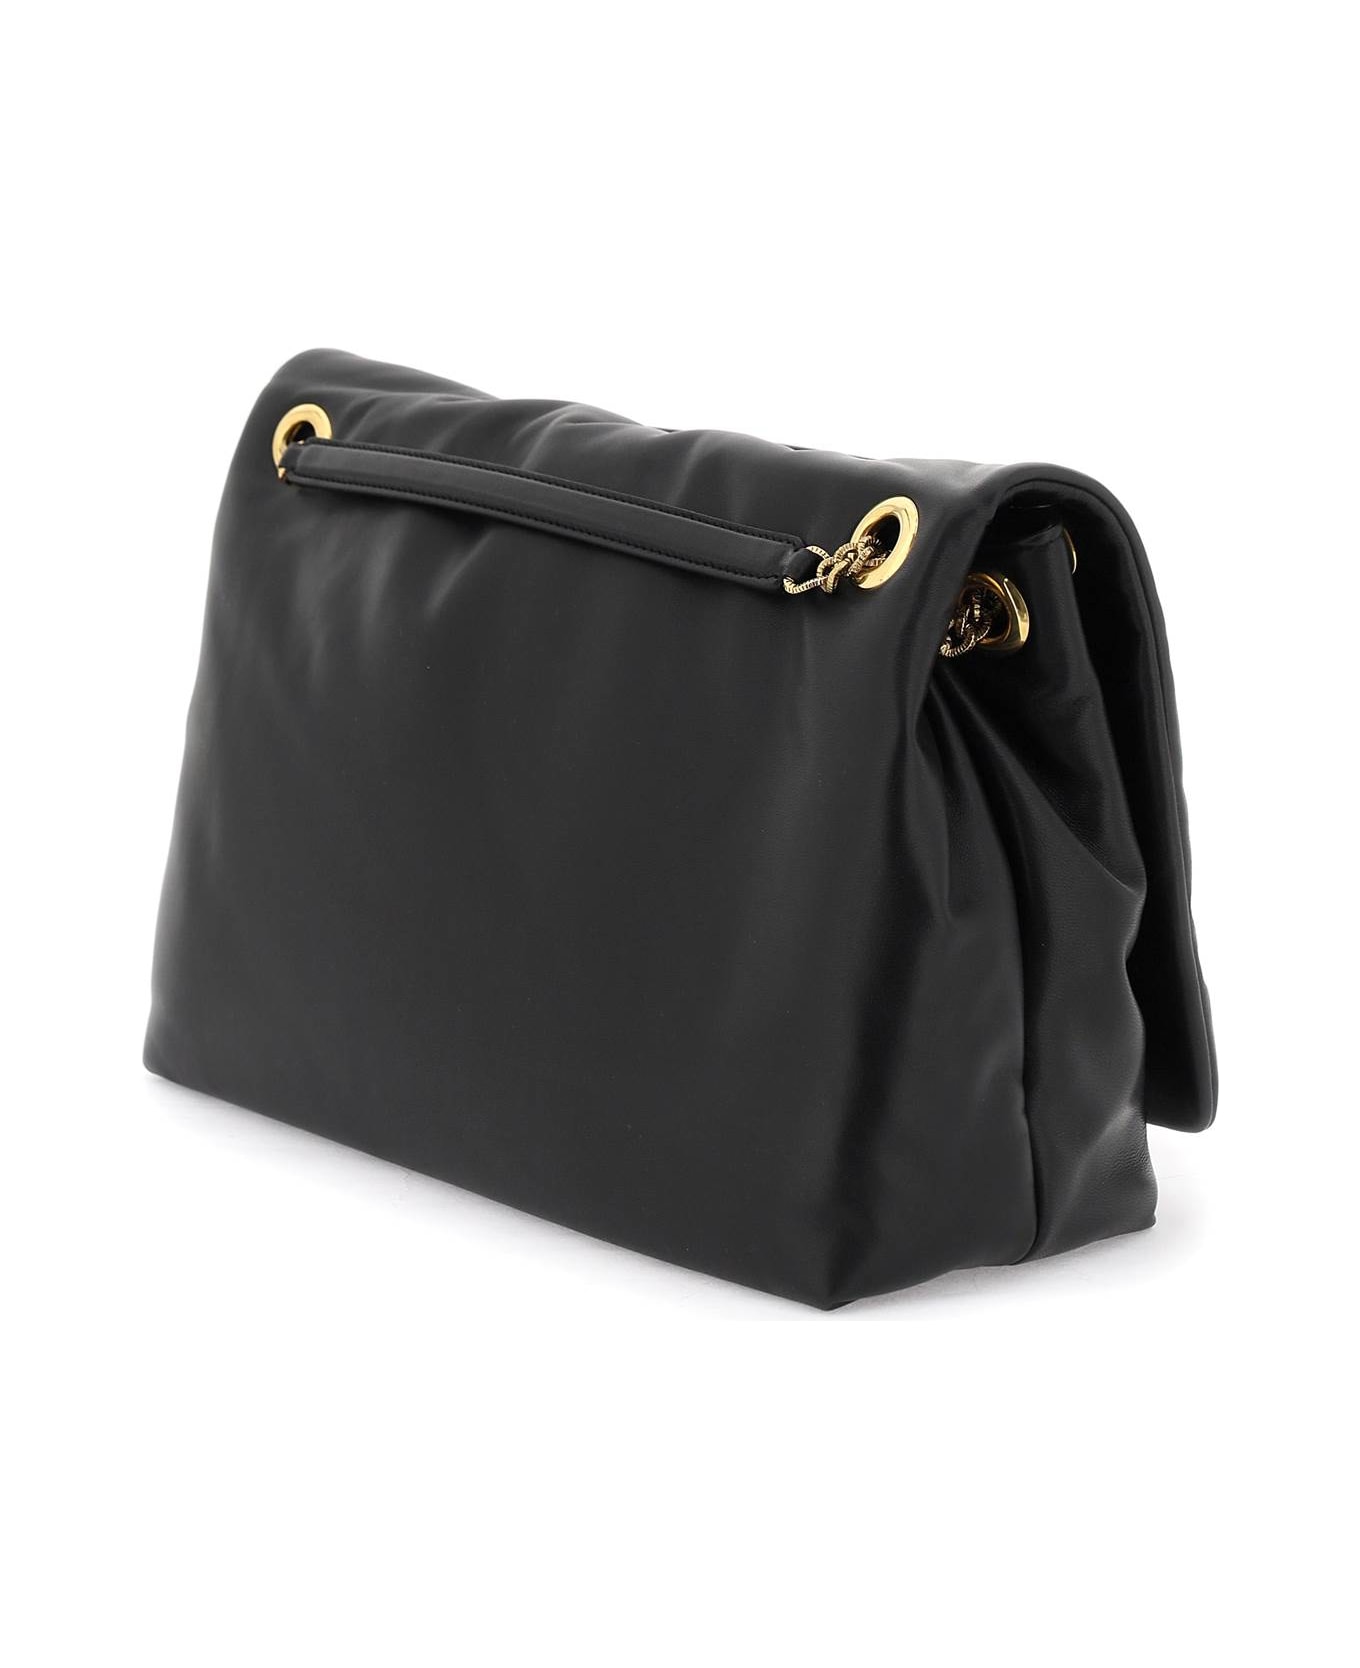 Dolce & Gabbana Devotion Shoulder Bag - Black